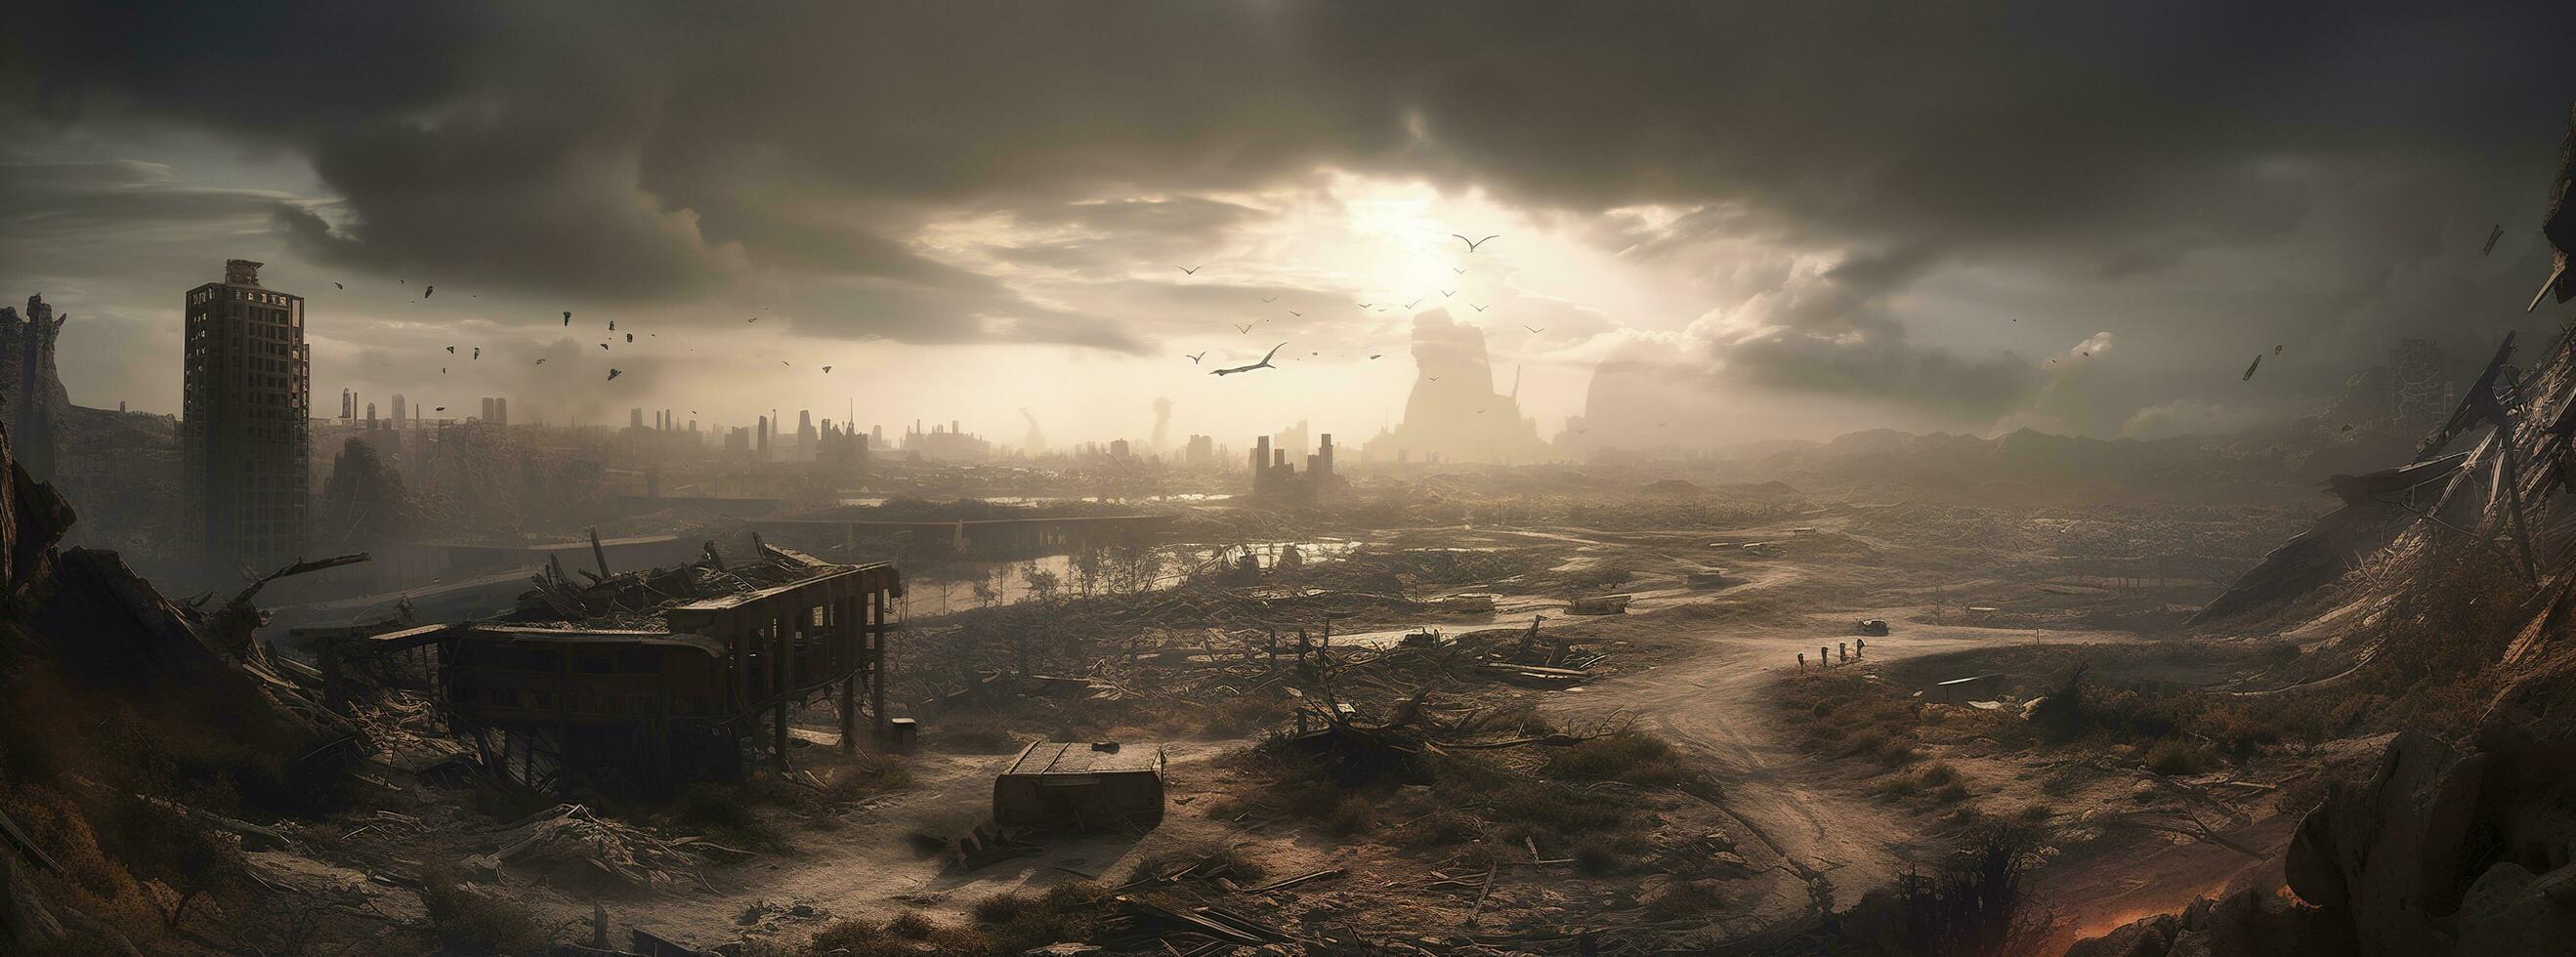 Lost civilization future dystopian landscape 3d illustration, generate ai photo